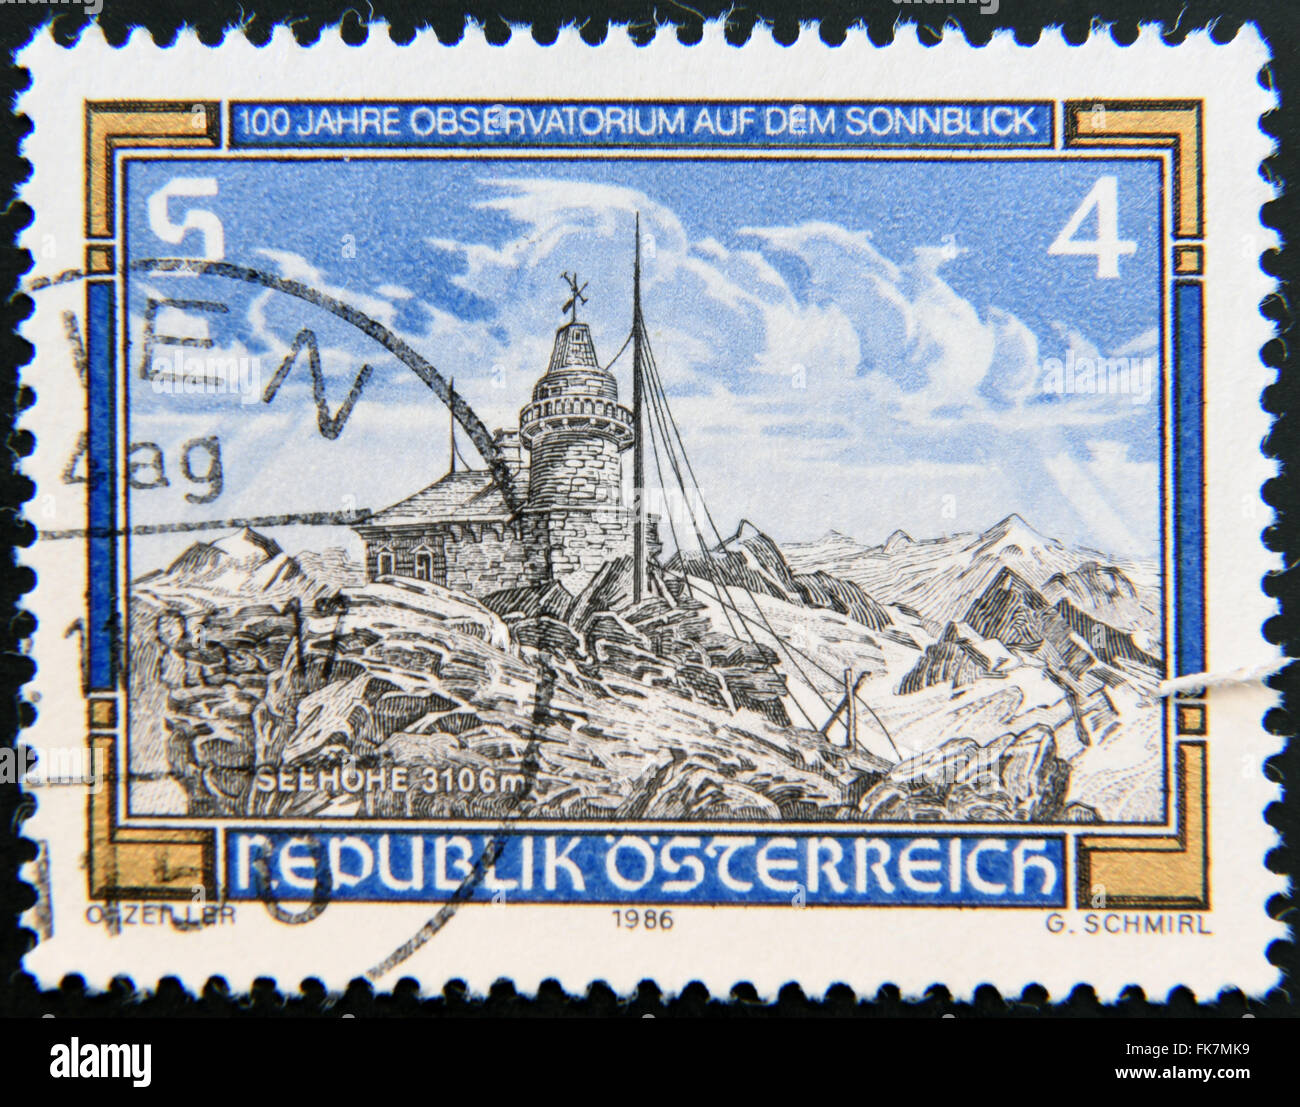 Autriche - VERS 1986 : un timbre imprimé en Autriche Sonnblick Observatoire montre situé dans les alpes autrichienne, vers 1986 Banque D'Images